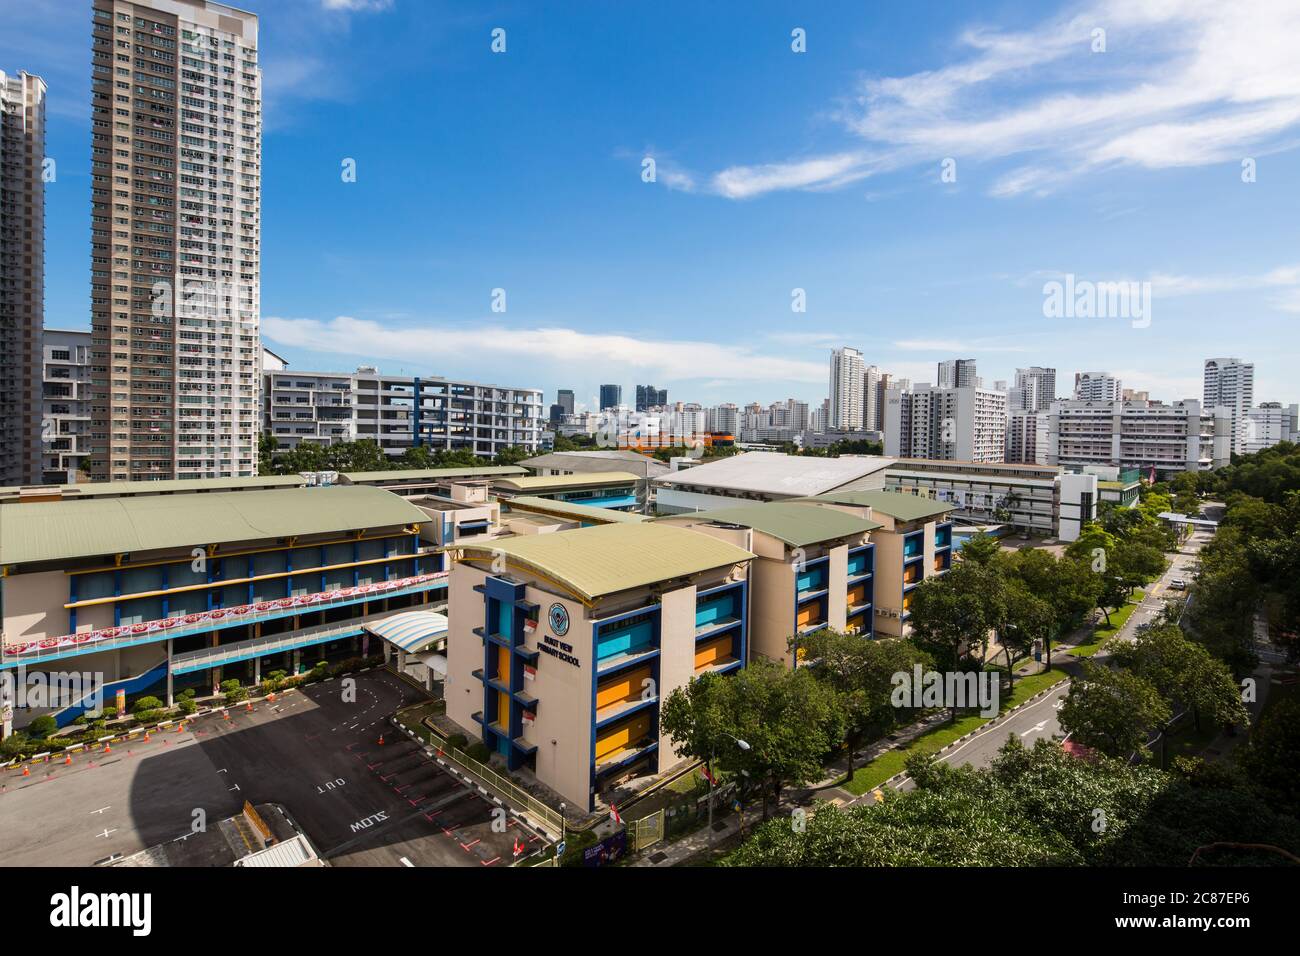 Vue sur le paysage urbain de Bukit Batok et Jurong East qui se compose de l'industrie légère, des logements et de l'école dans cette scène, Singapour. Banque D'Images